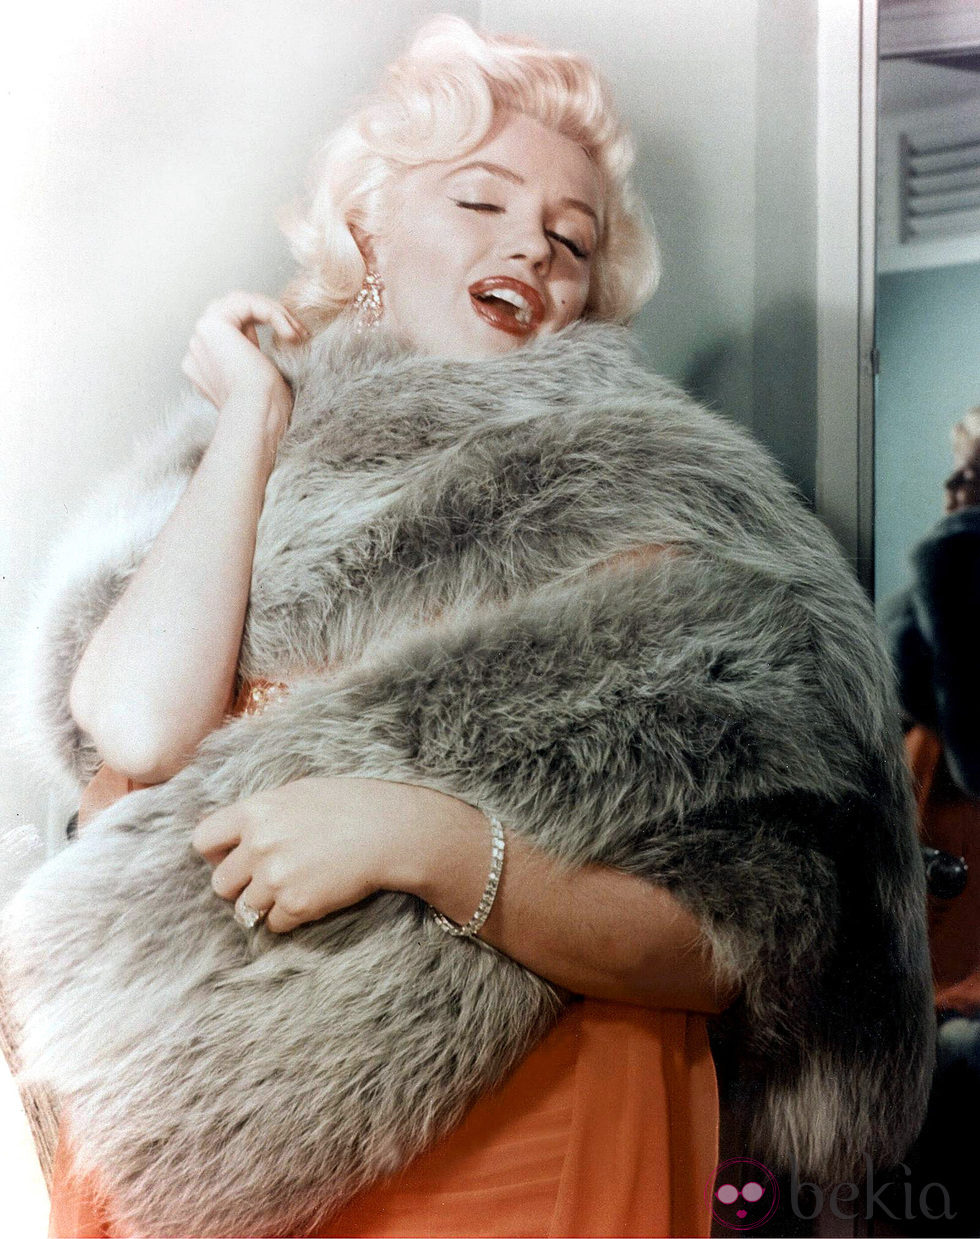 Marylin Monroe en una escena de la película 'Los caballeros las prefiern rubias' (1953)